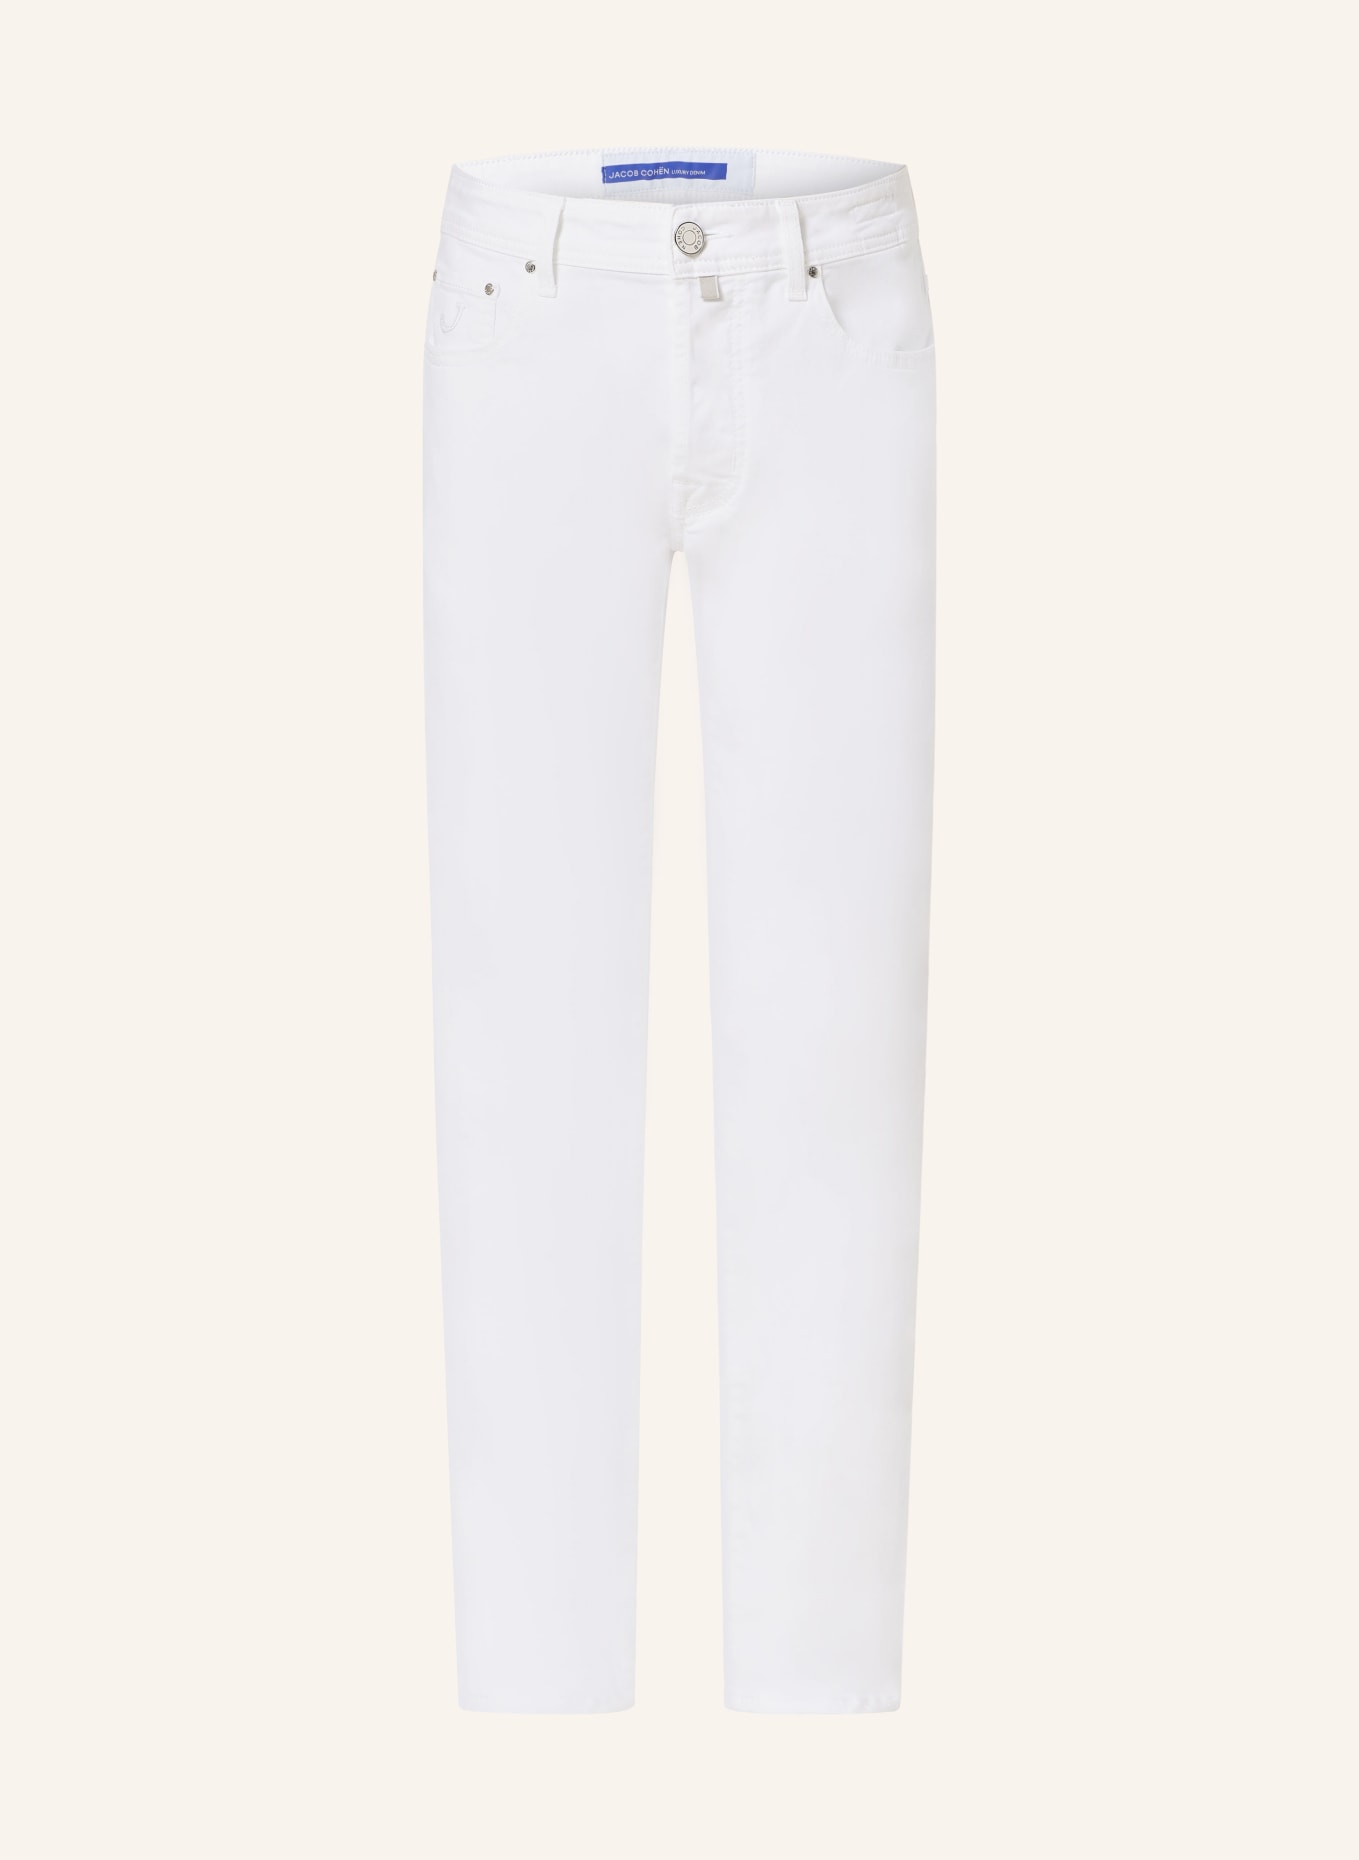 JACOB COHEN Jeans BARD slim fit, Color: 750D White (Image 1)